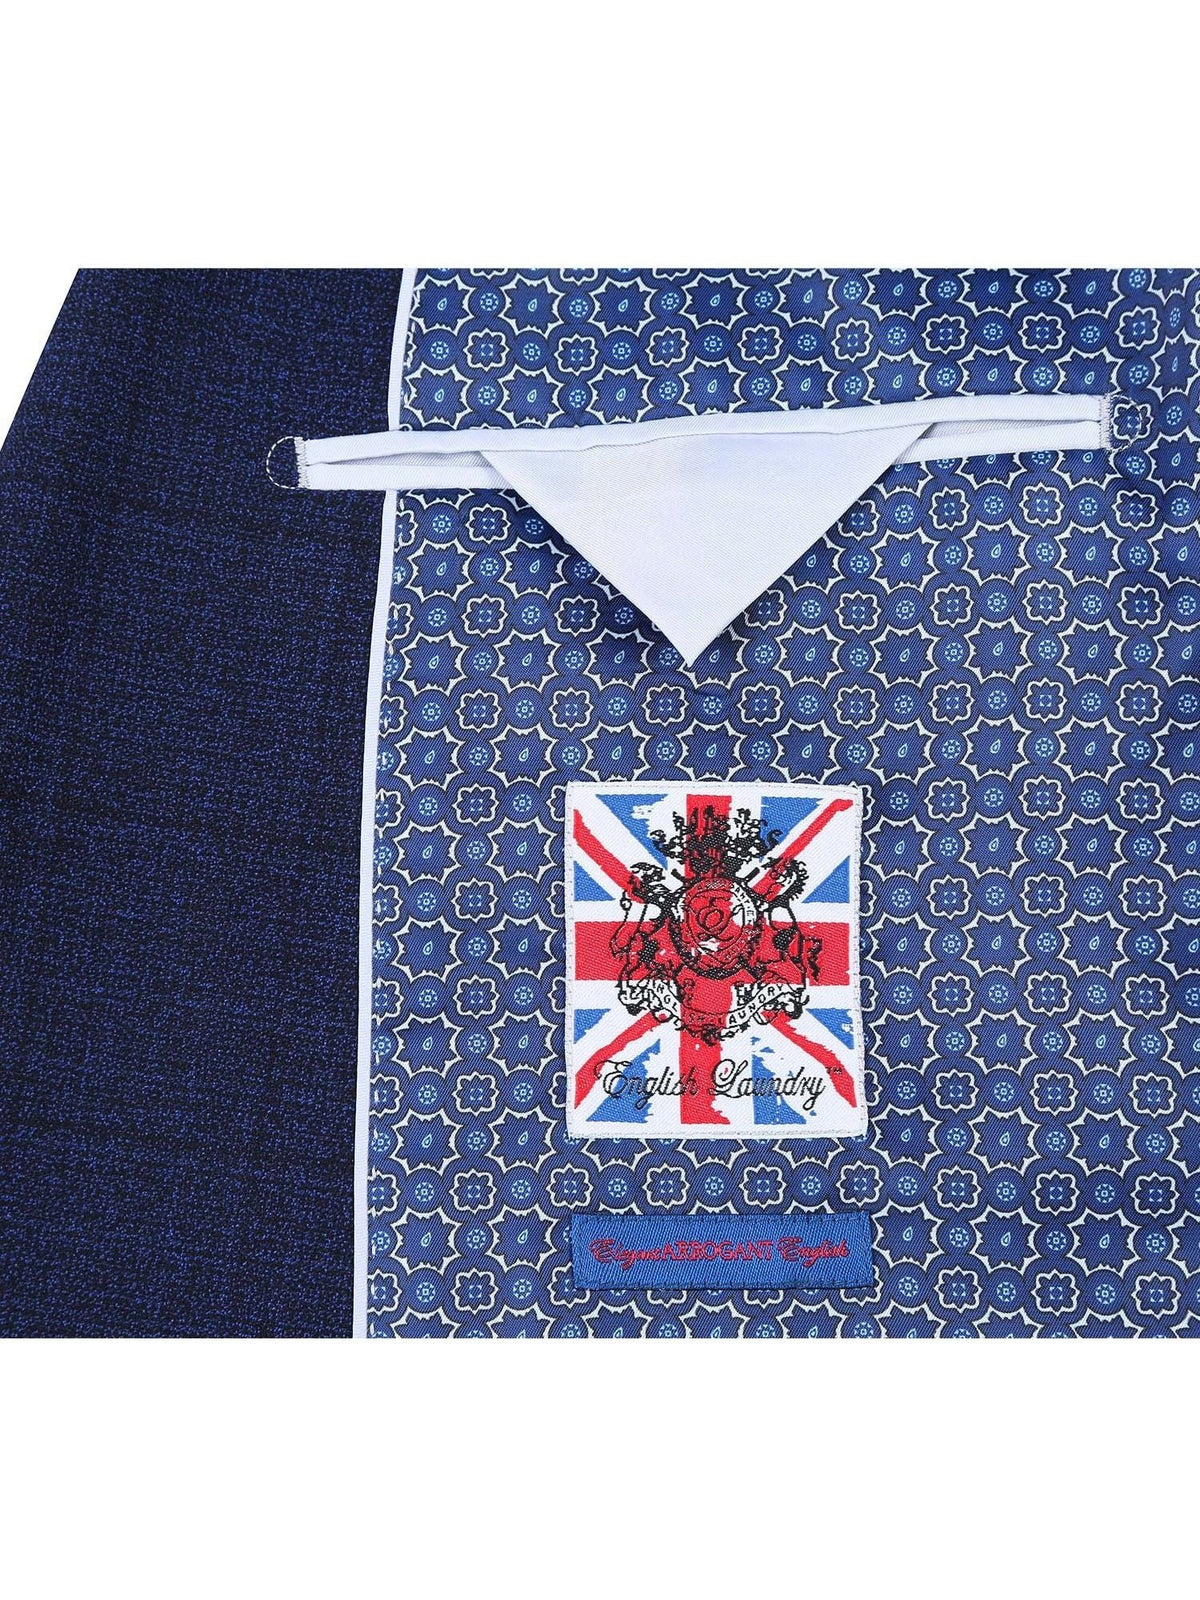 English Laundry Slim Fit Two button Blue Check Peak Lapel Suit